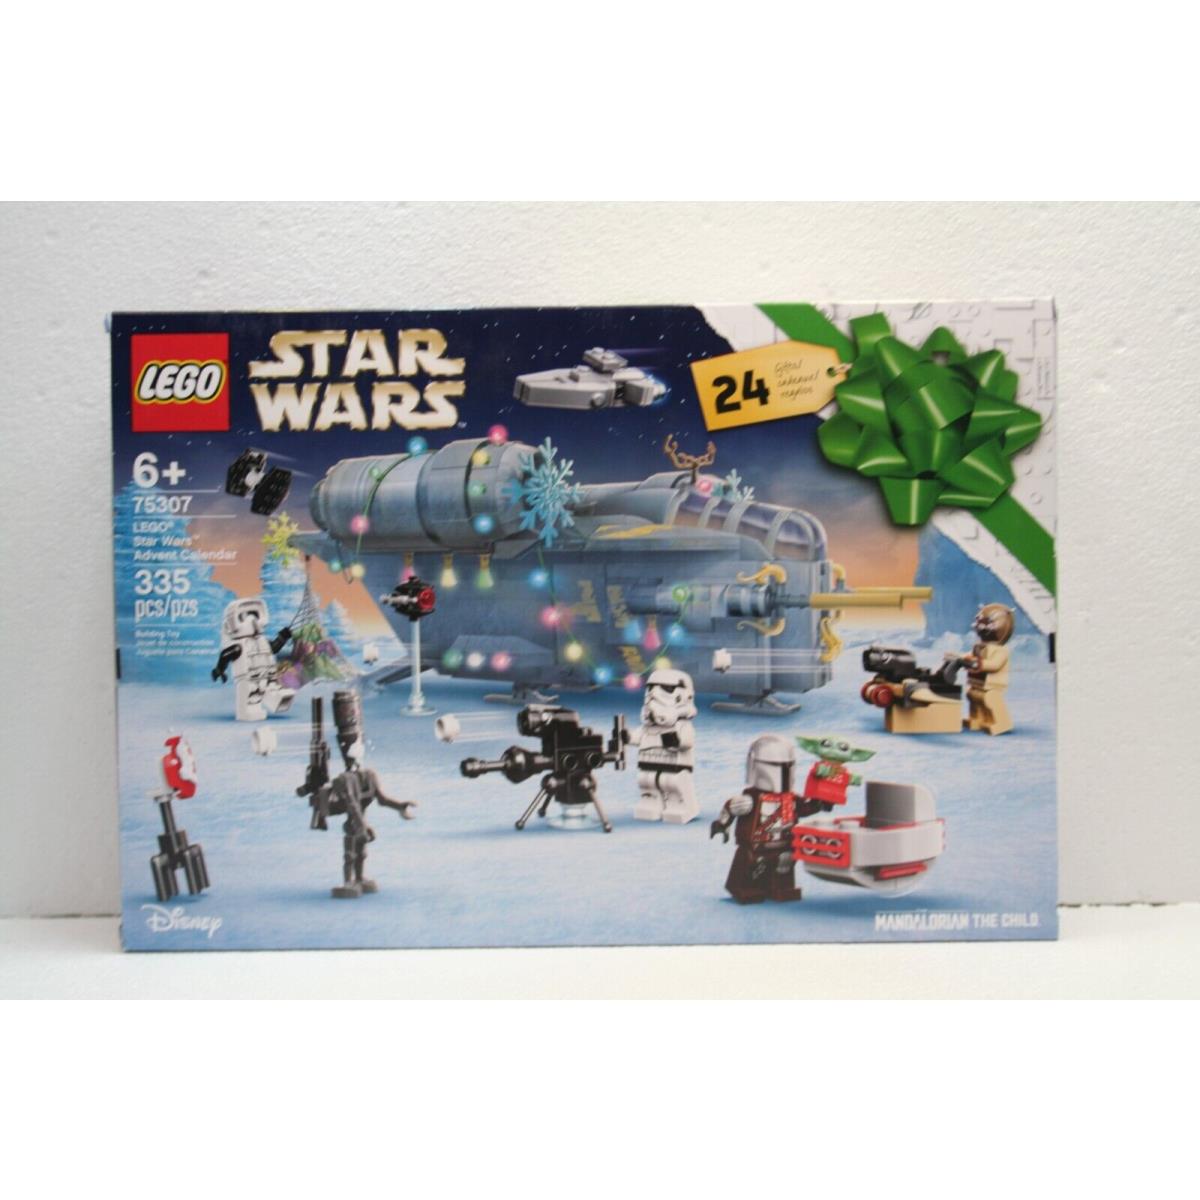 Star Wars Lego 75307 Lego Star Wars Advent Calendar 2021